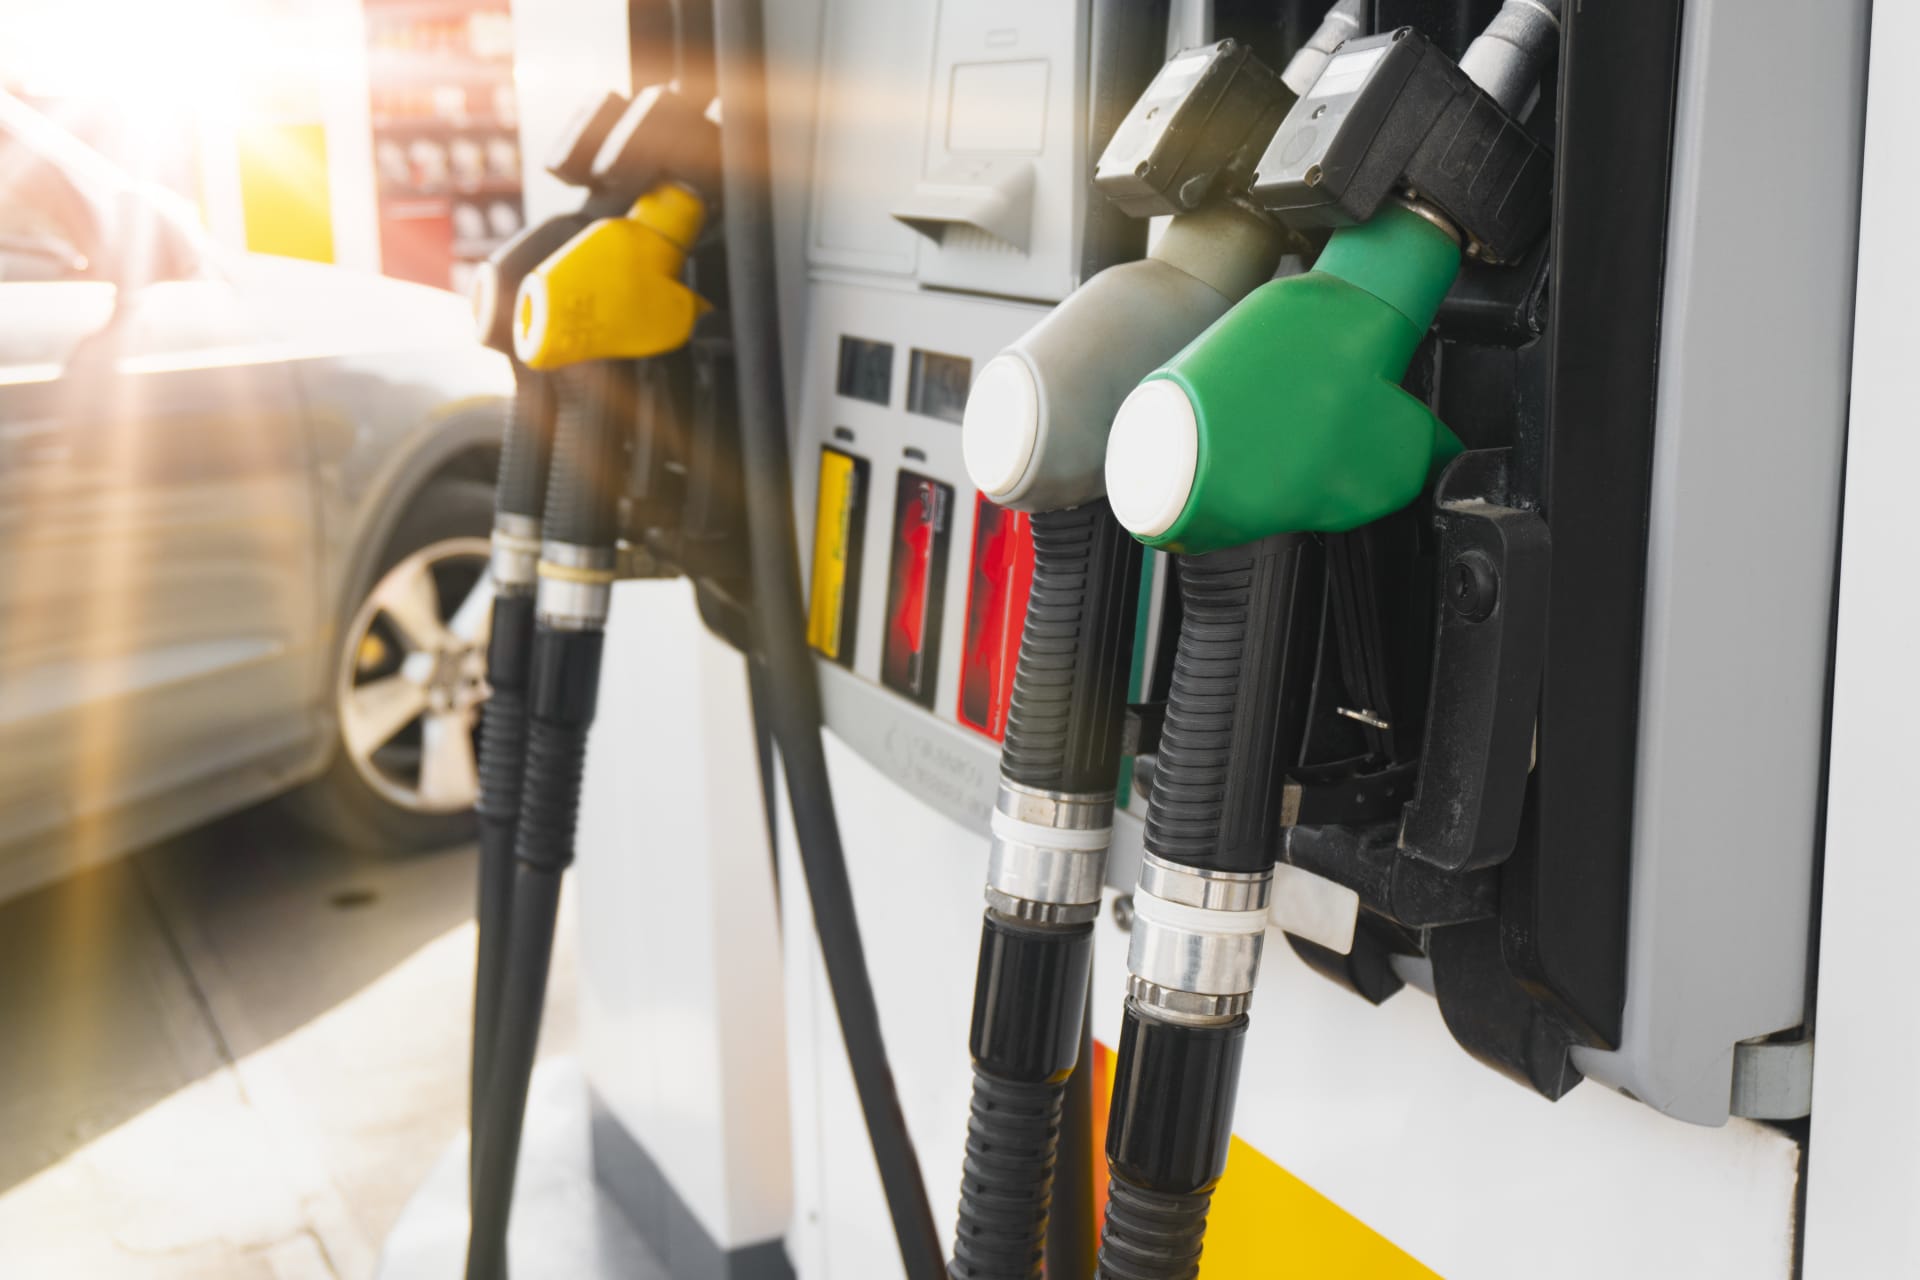 Rostoucí ceny pohonných hmot nutí státy k přemýšlení o opatřeních, která by provozovatele čerpacích stanic rozhodně nepotěšila – a potažmo ani jejich zákazníky. 